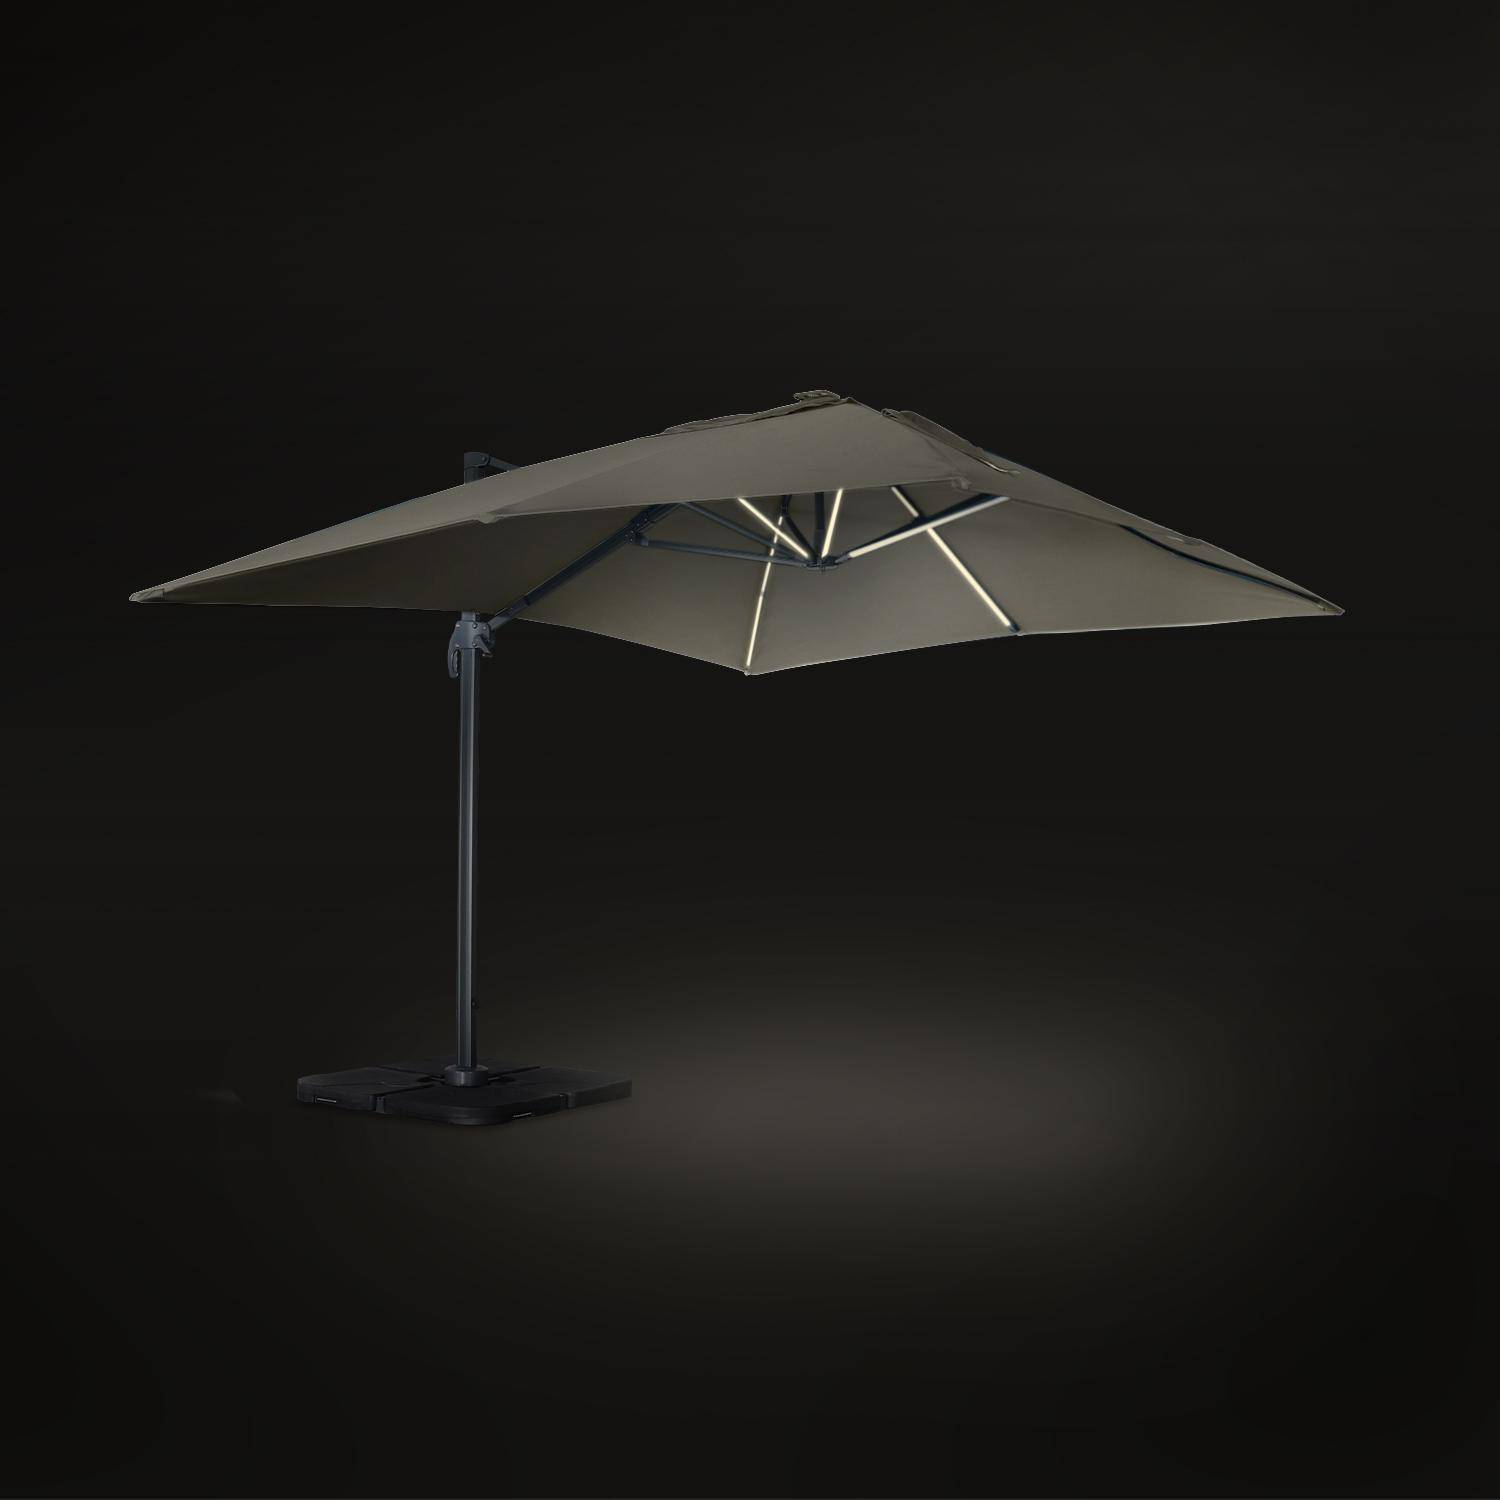 Luce, parasol déporté haut de gamme 3x4m Photo4